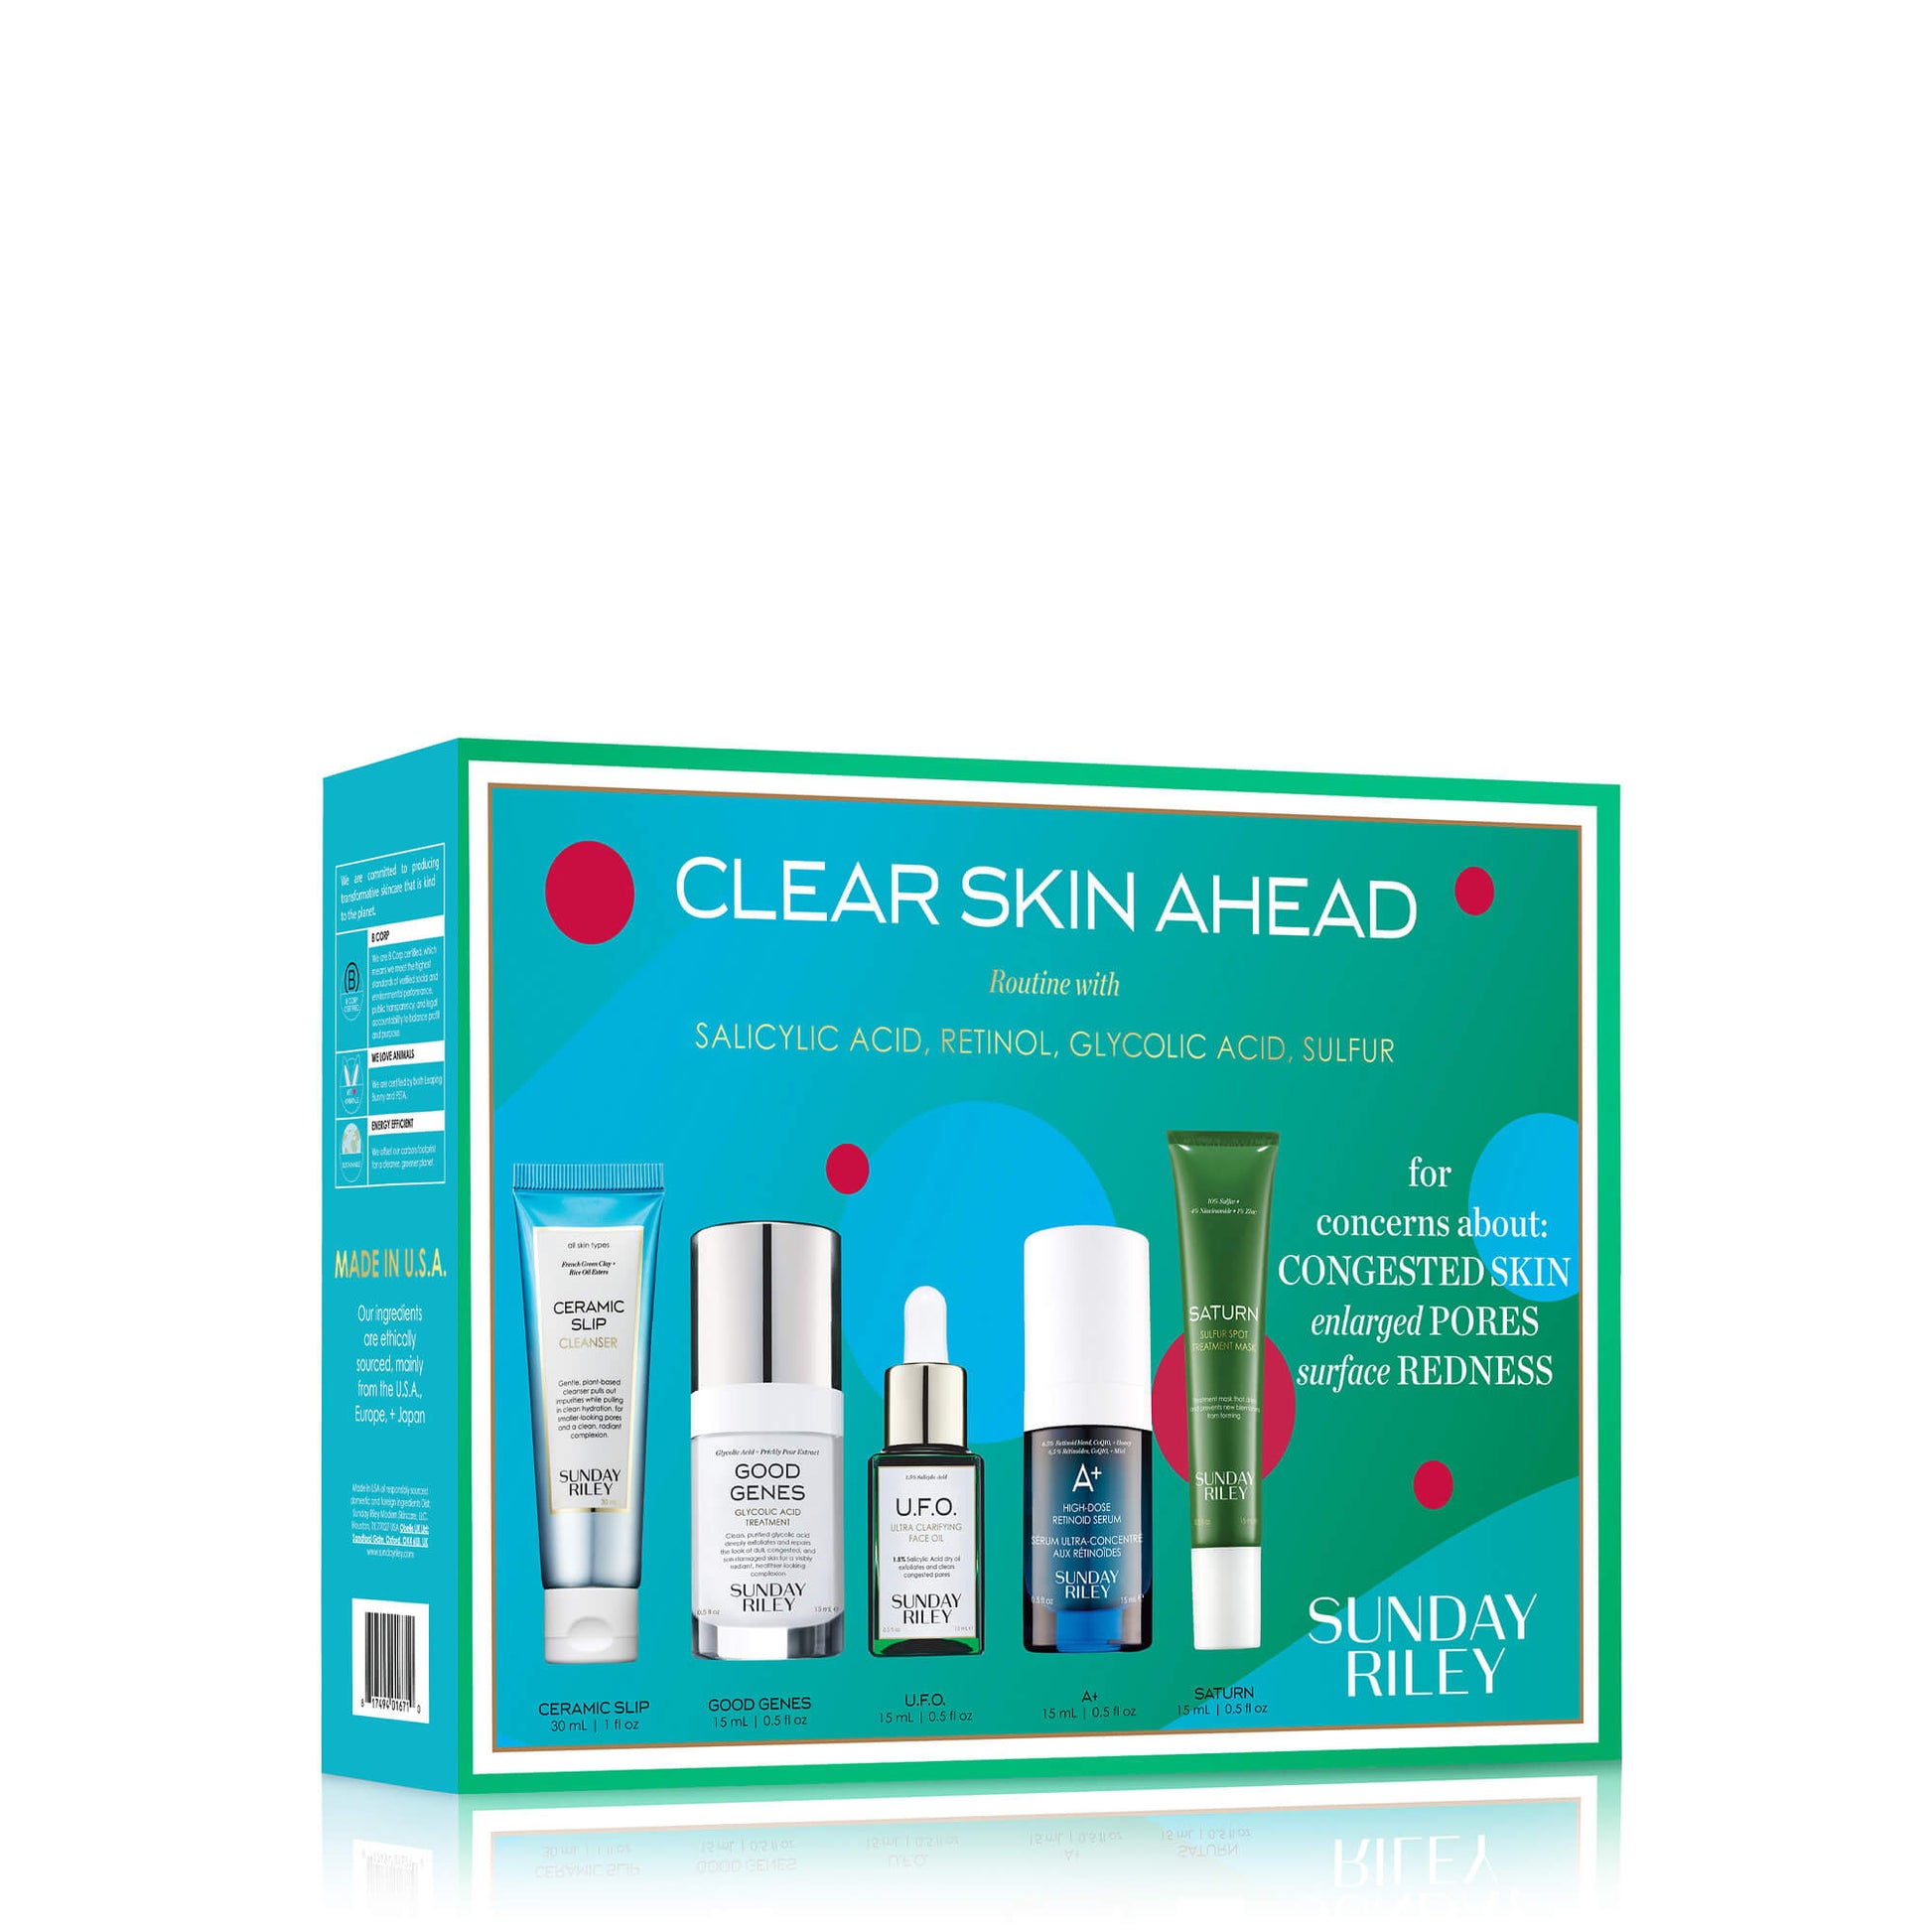 Clear Skin Ahead kit pack shot